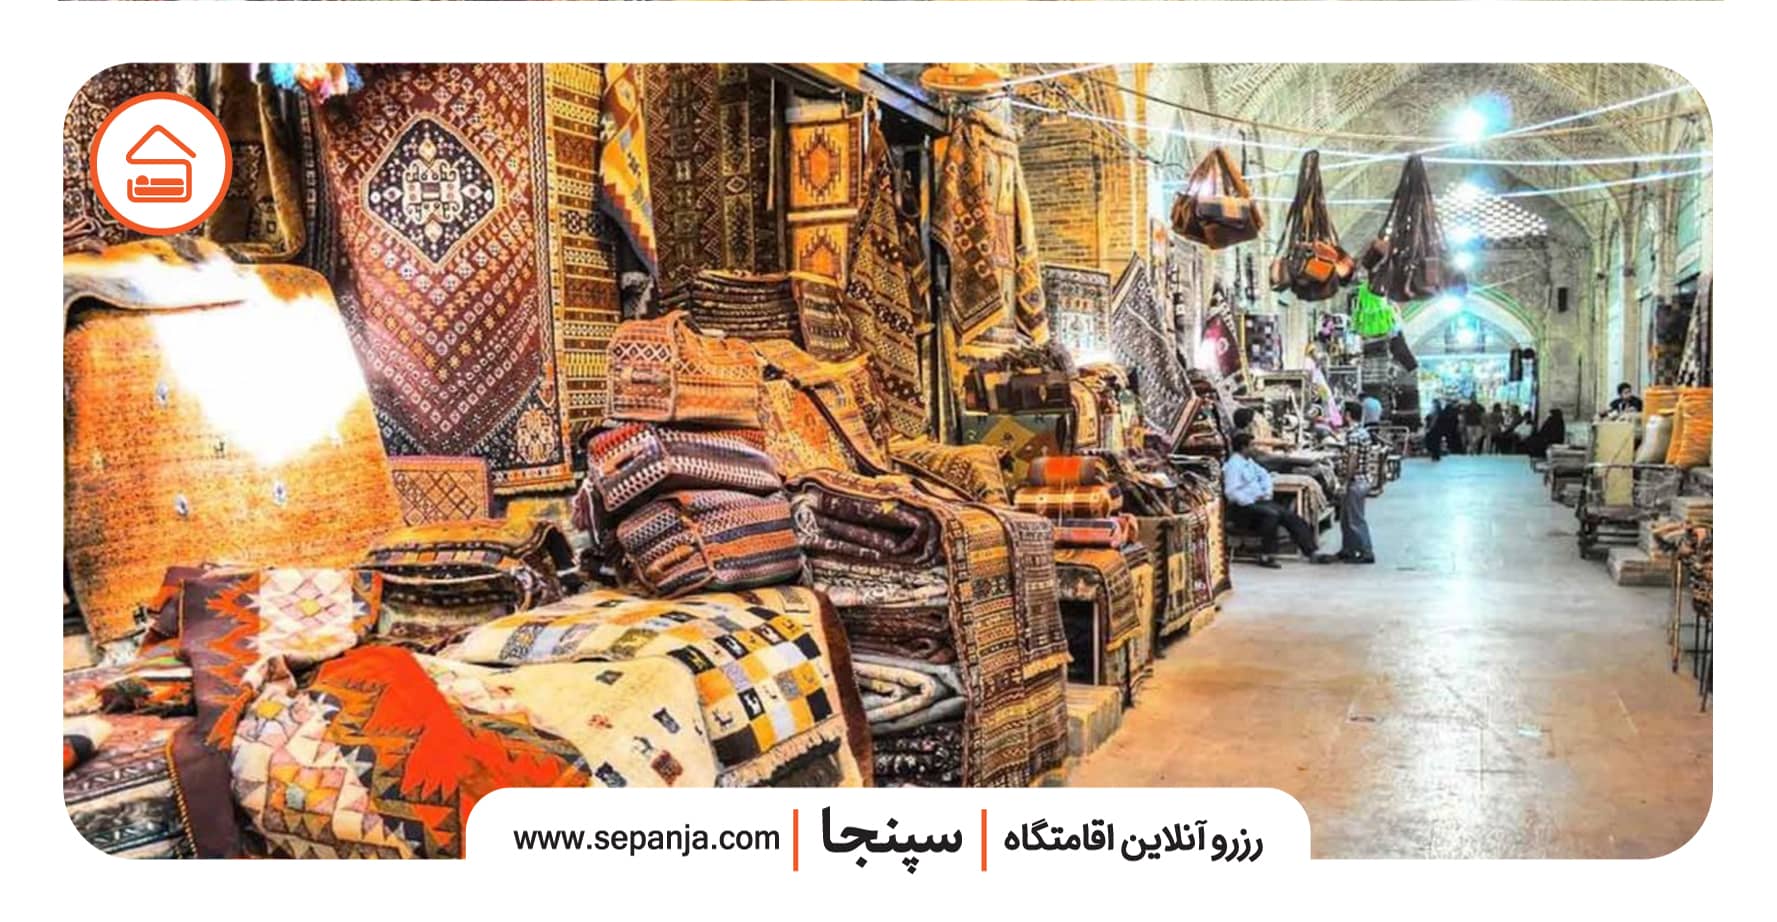 نمایی از گشت و گذار در بازار سنتی بوشهر